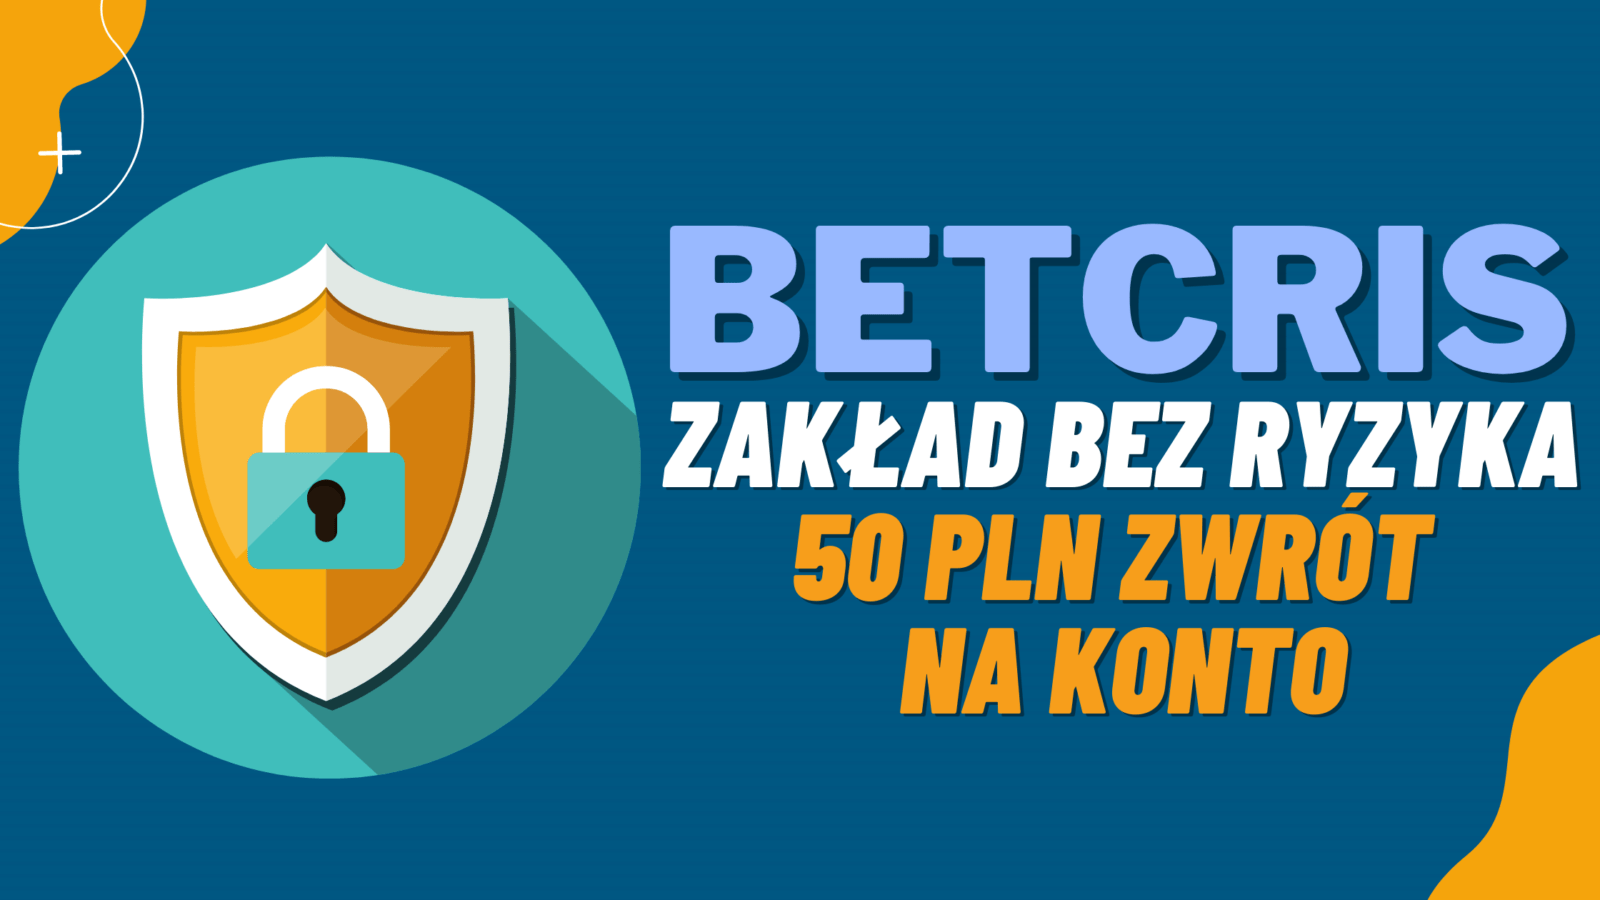 Legalny bukmacher Betcris zakład bez ryzyka - 50 PLN zwrot na konto główne